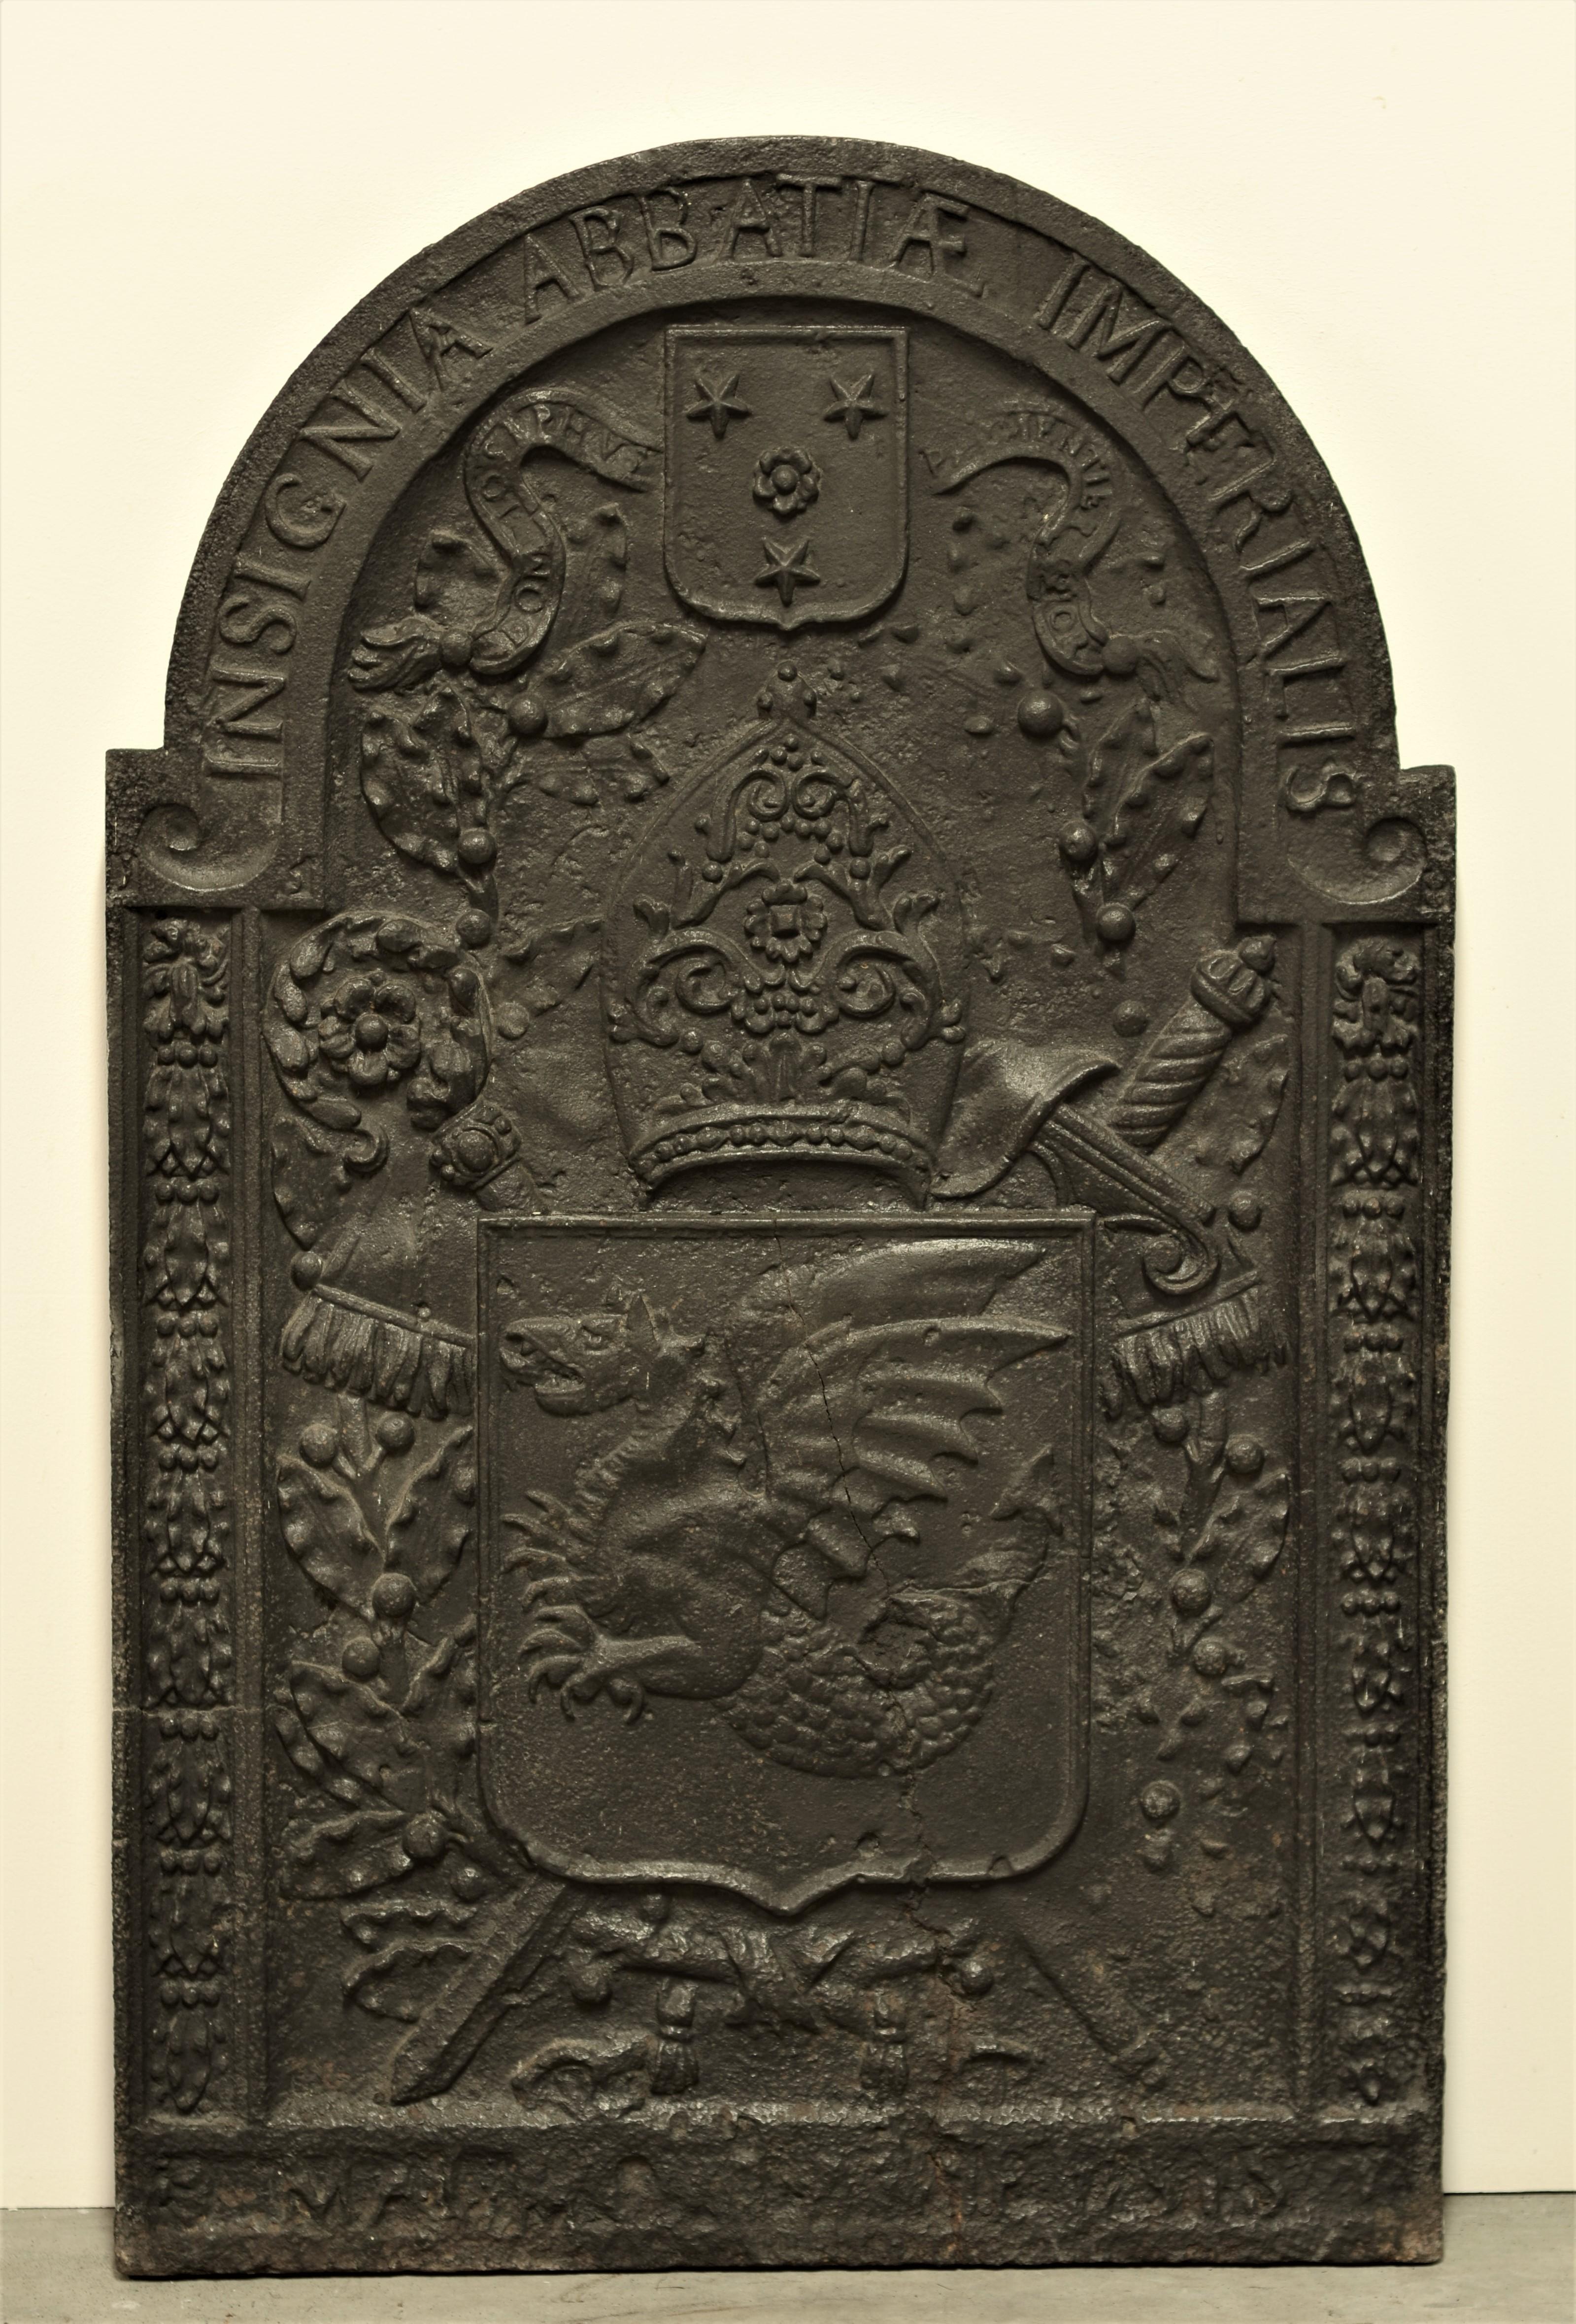 Plaque de cheminée ou dosseret unique en fonte du 17e siècle.

Cette haute plaque de cheminée est magnifiquement et fortement décorée d'un dragon sur un bouclier avec une épée, entre des colonnes florales et sous une mitre et un bouclier à